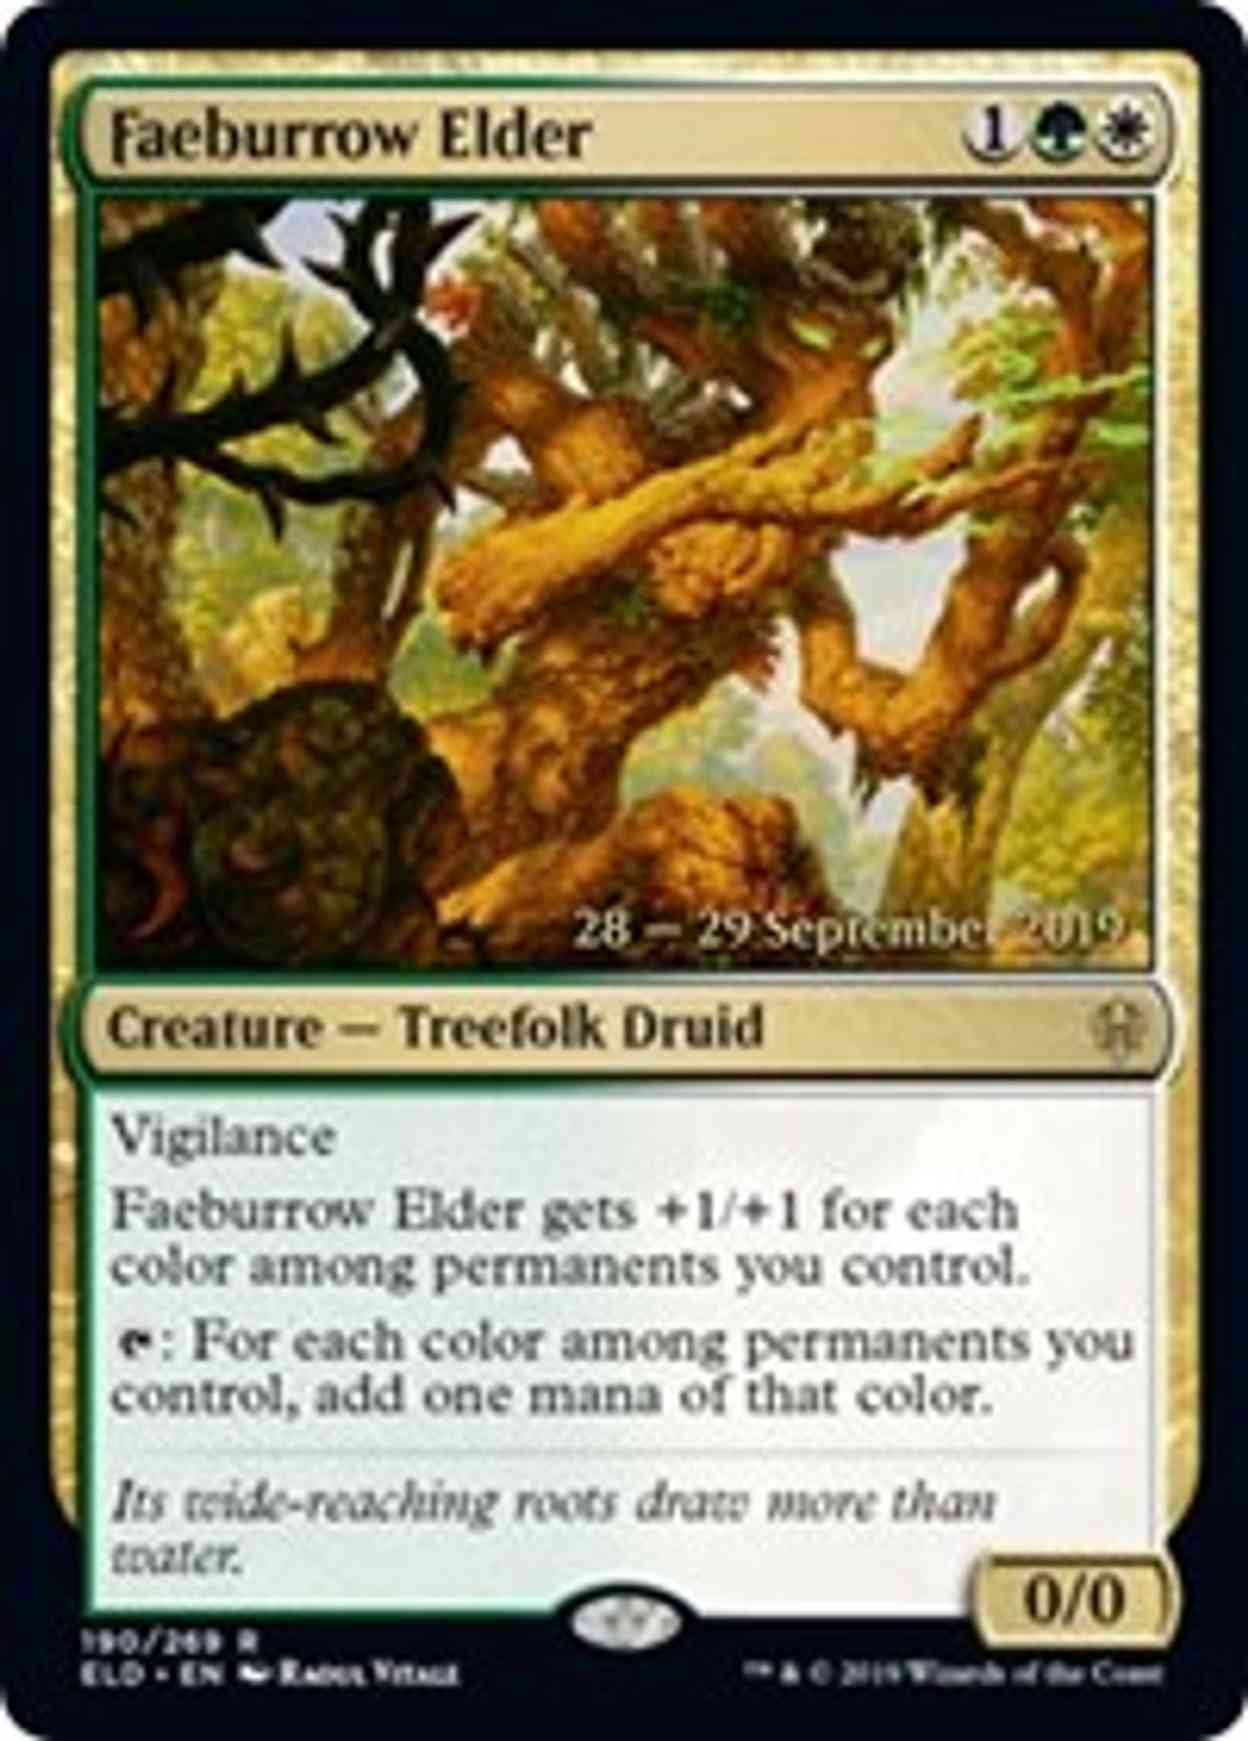 Faeburrow Elder magic card front